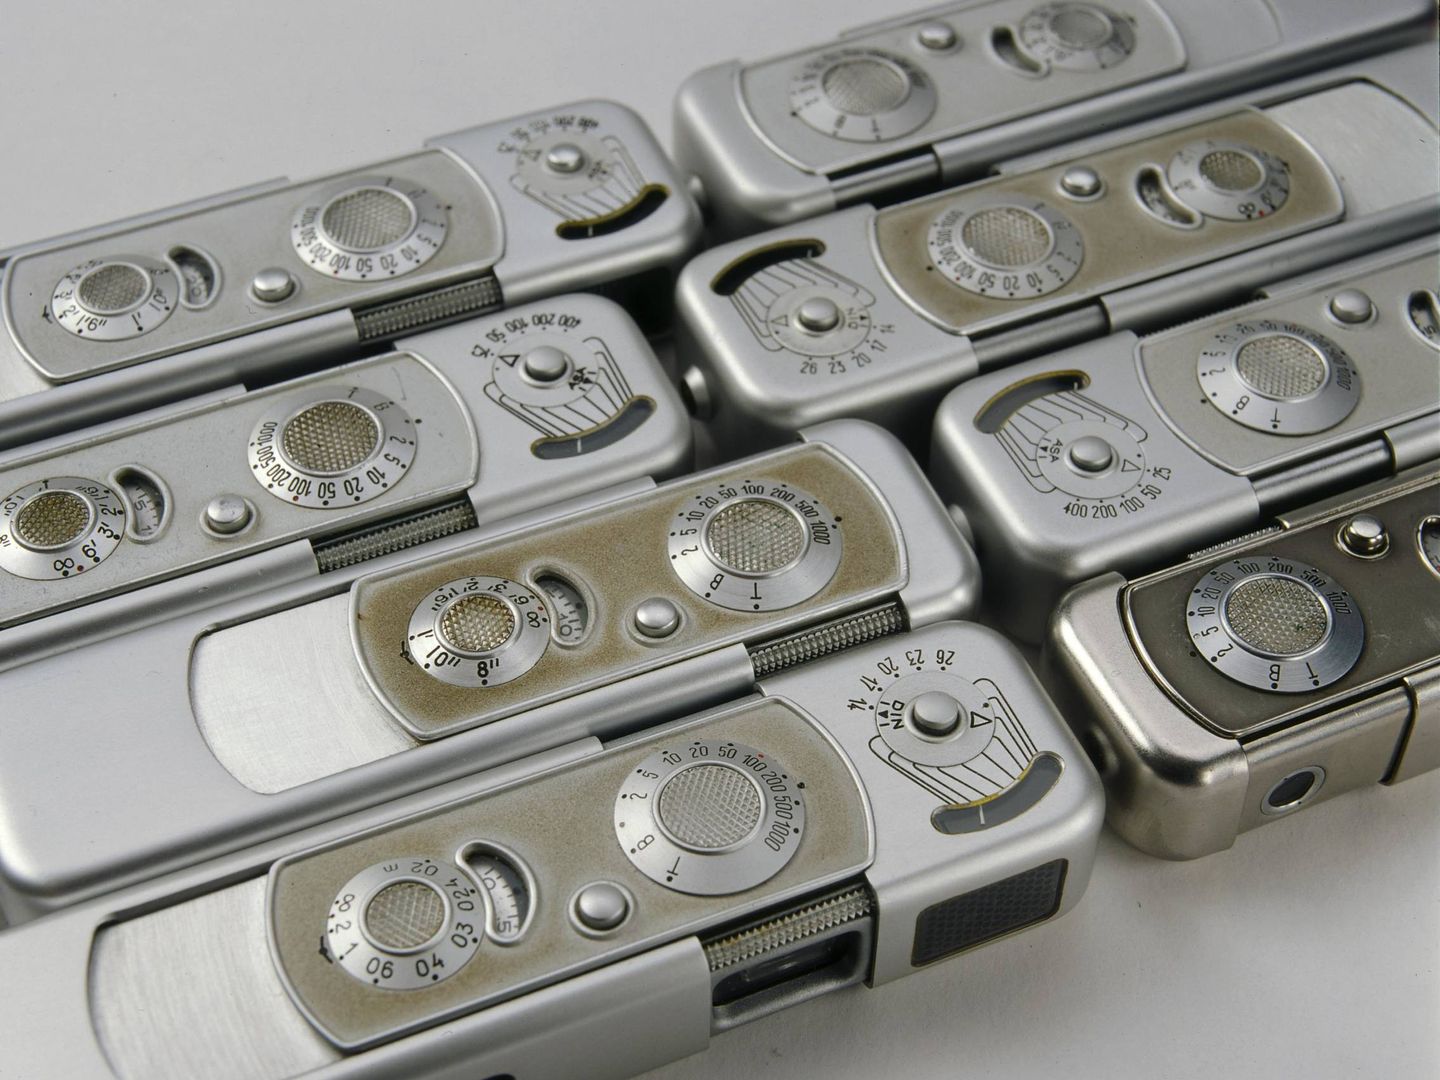 Las cámaras Minox fueron las más utilizadas por los servicios de inteligencia durante medio siglo (Foto: International Spy Museum)